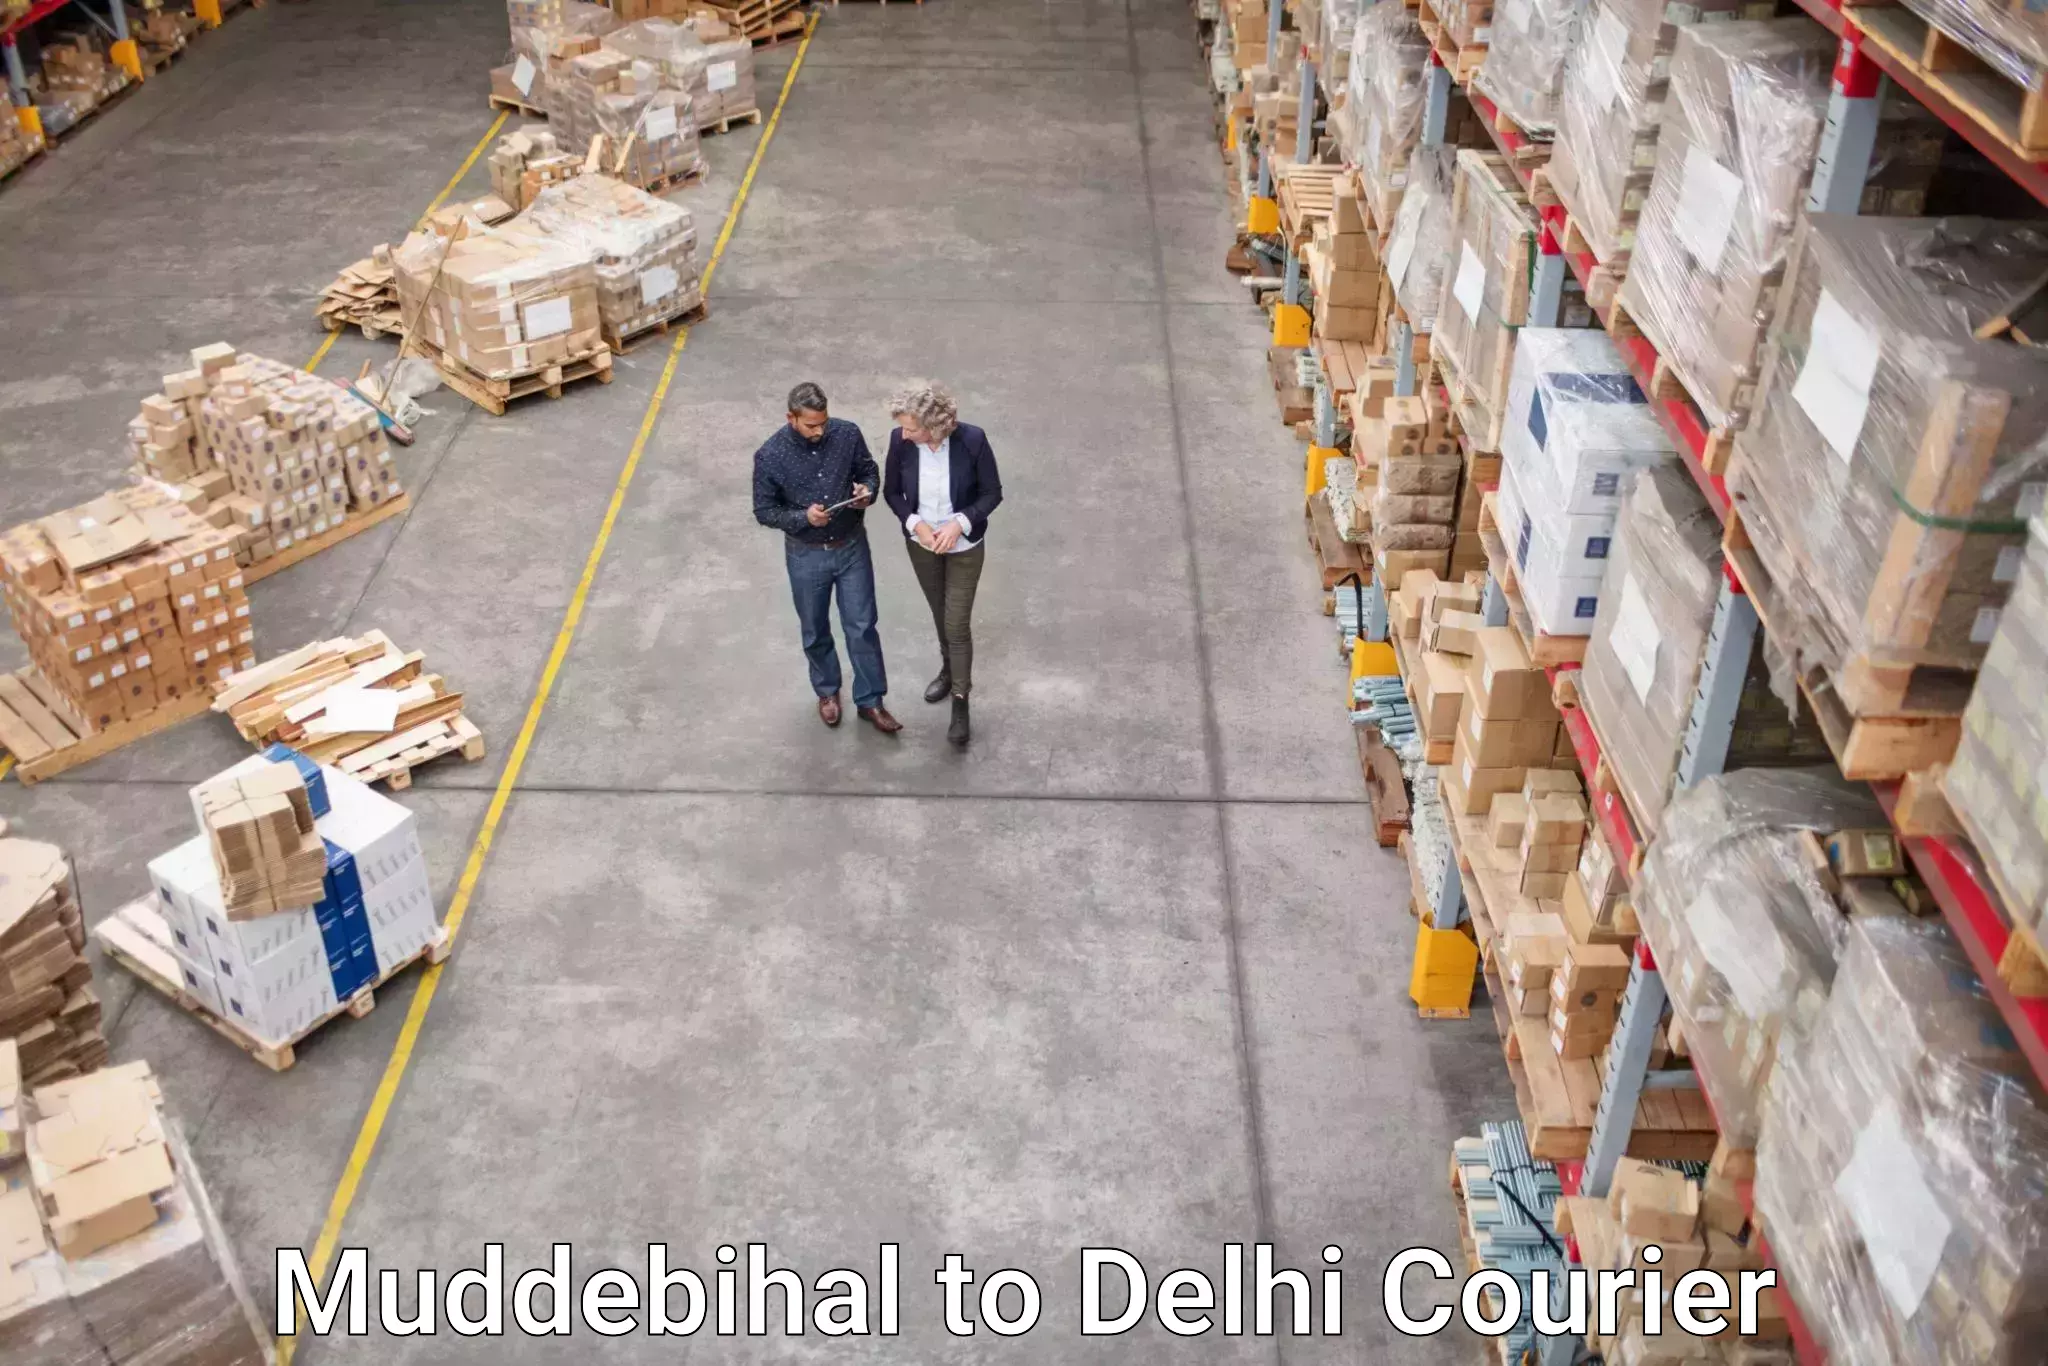 Customer-oriented courier services Muddebihal to Jawaharlal Nehru University New Delhi